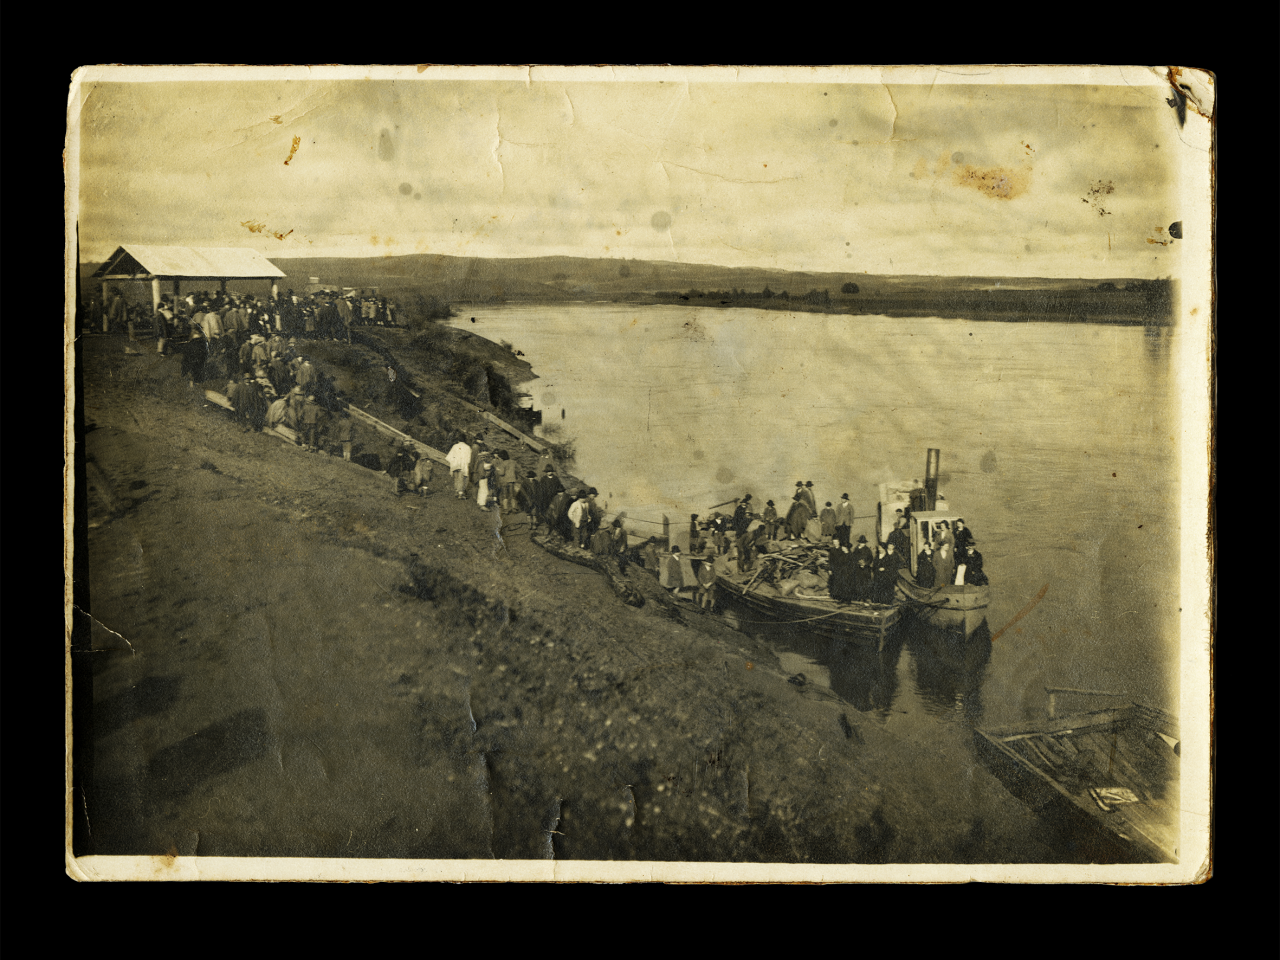 Misioneros llegando a Cholchol (se ve lanchón de transporte con barco que lo remolcaba en el río, así como estructuras similares a tobogán para tirar y cargar sacos de trigo)